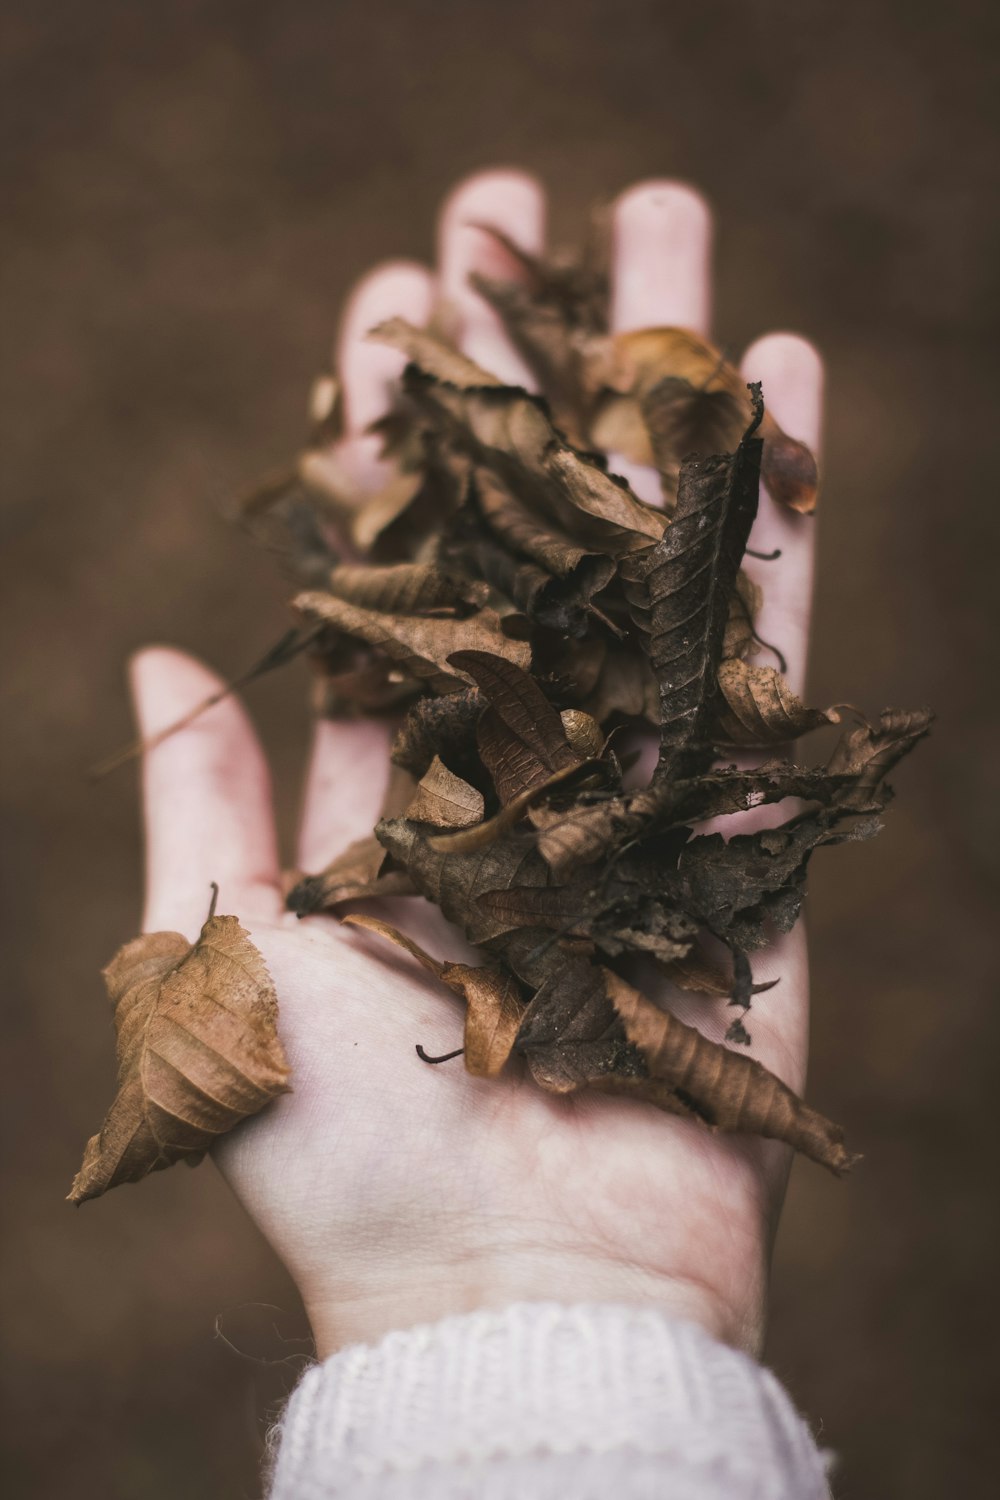 foglie secche nel palmo della mano della persona